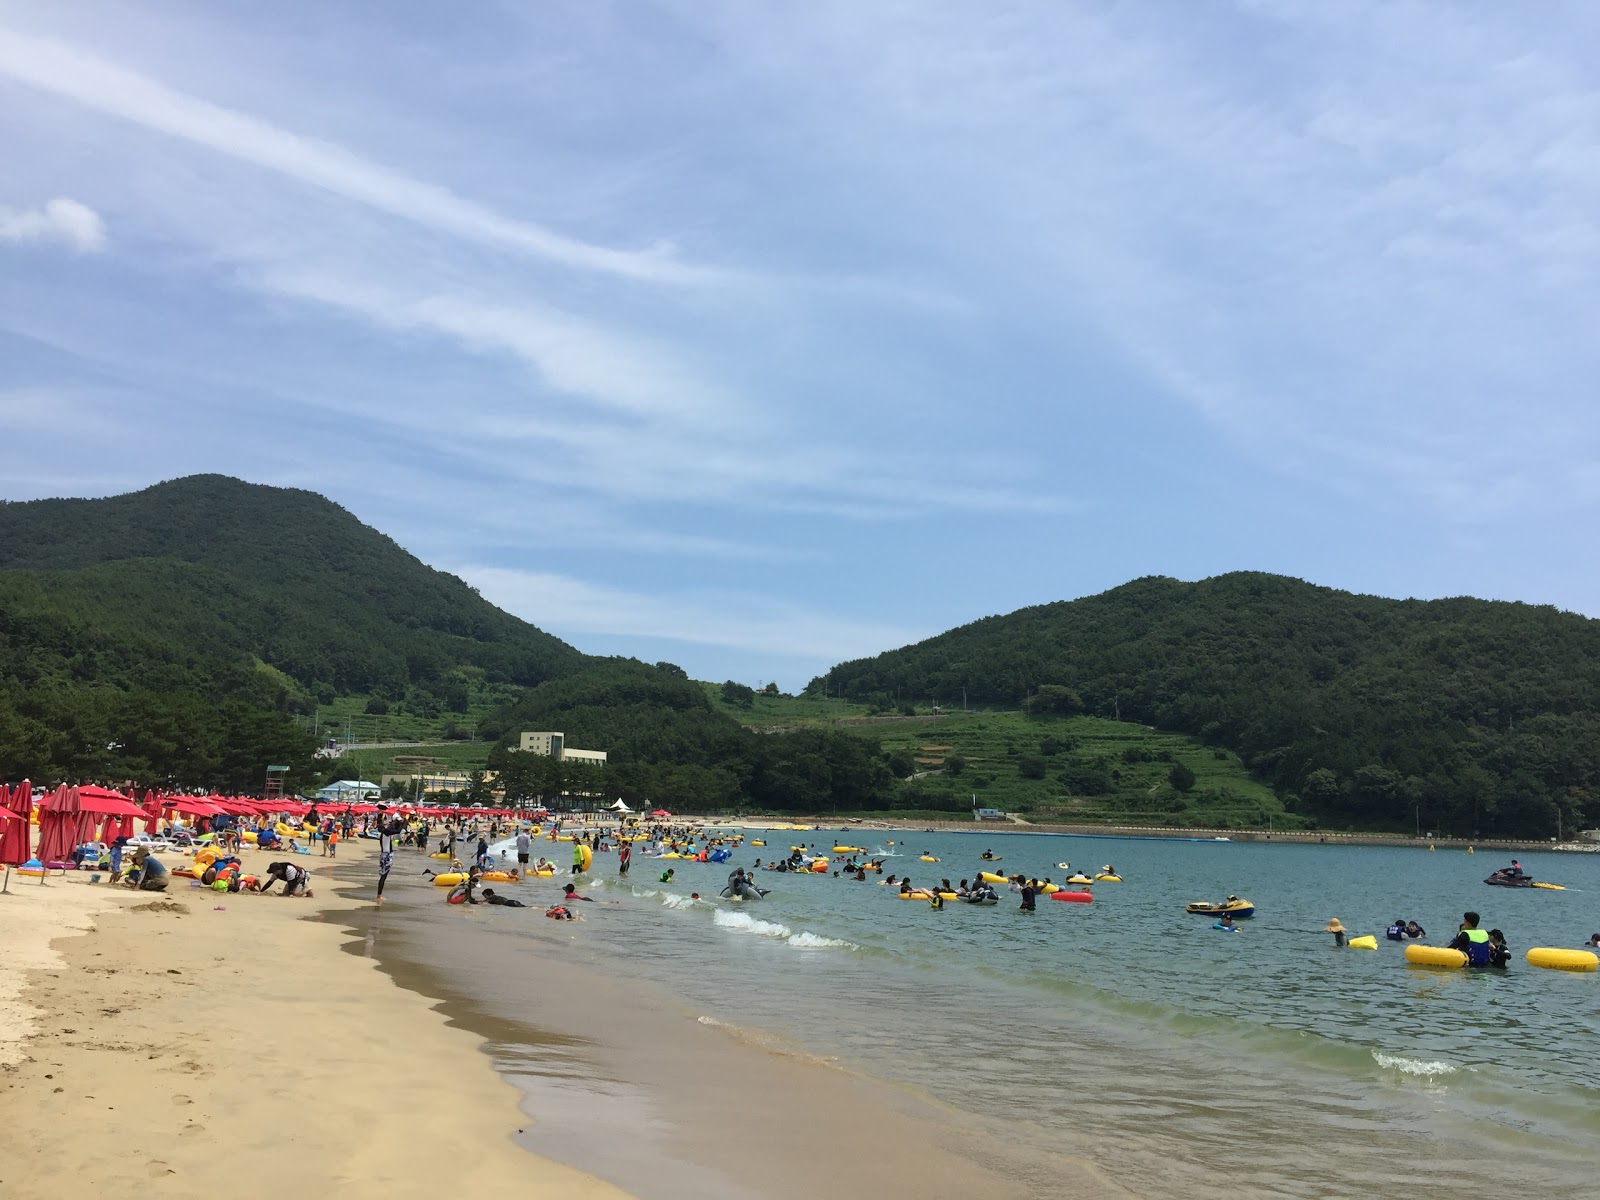 Sangju Eun Sand Beach'in fotoğrafı parlak kum yüzey ile